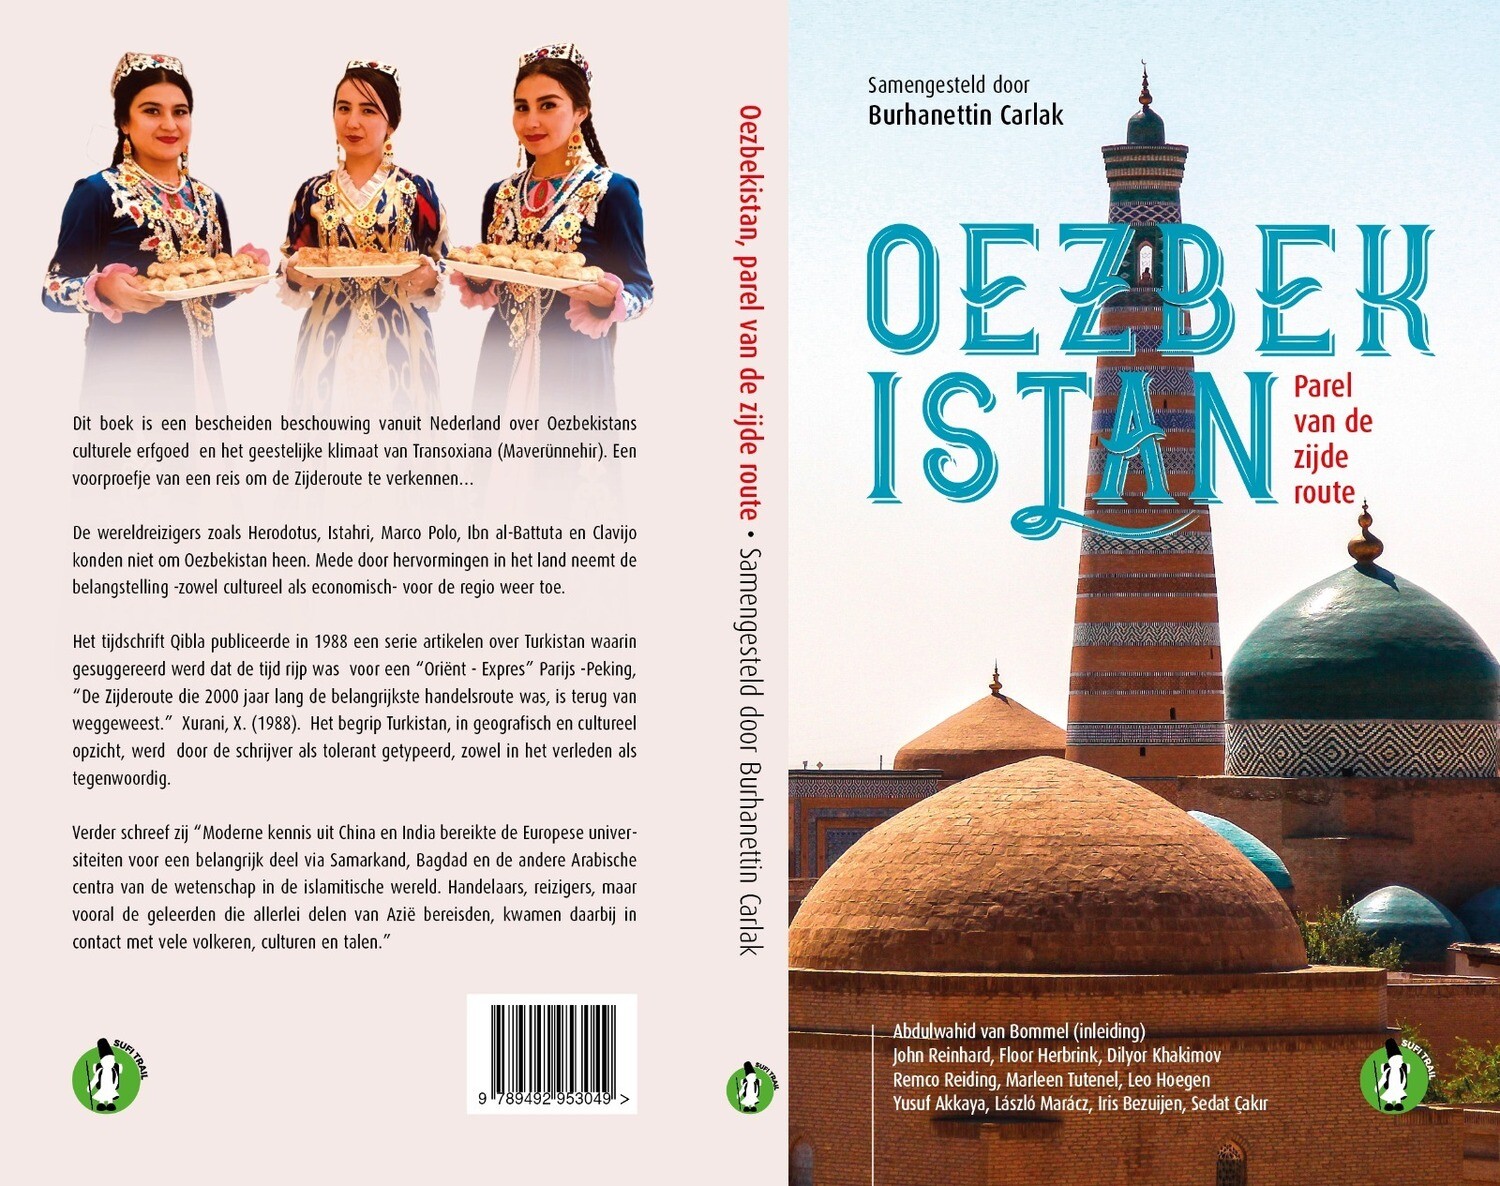 Oezbekistan - Parel van de zijderoute